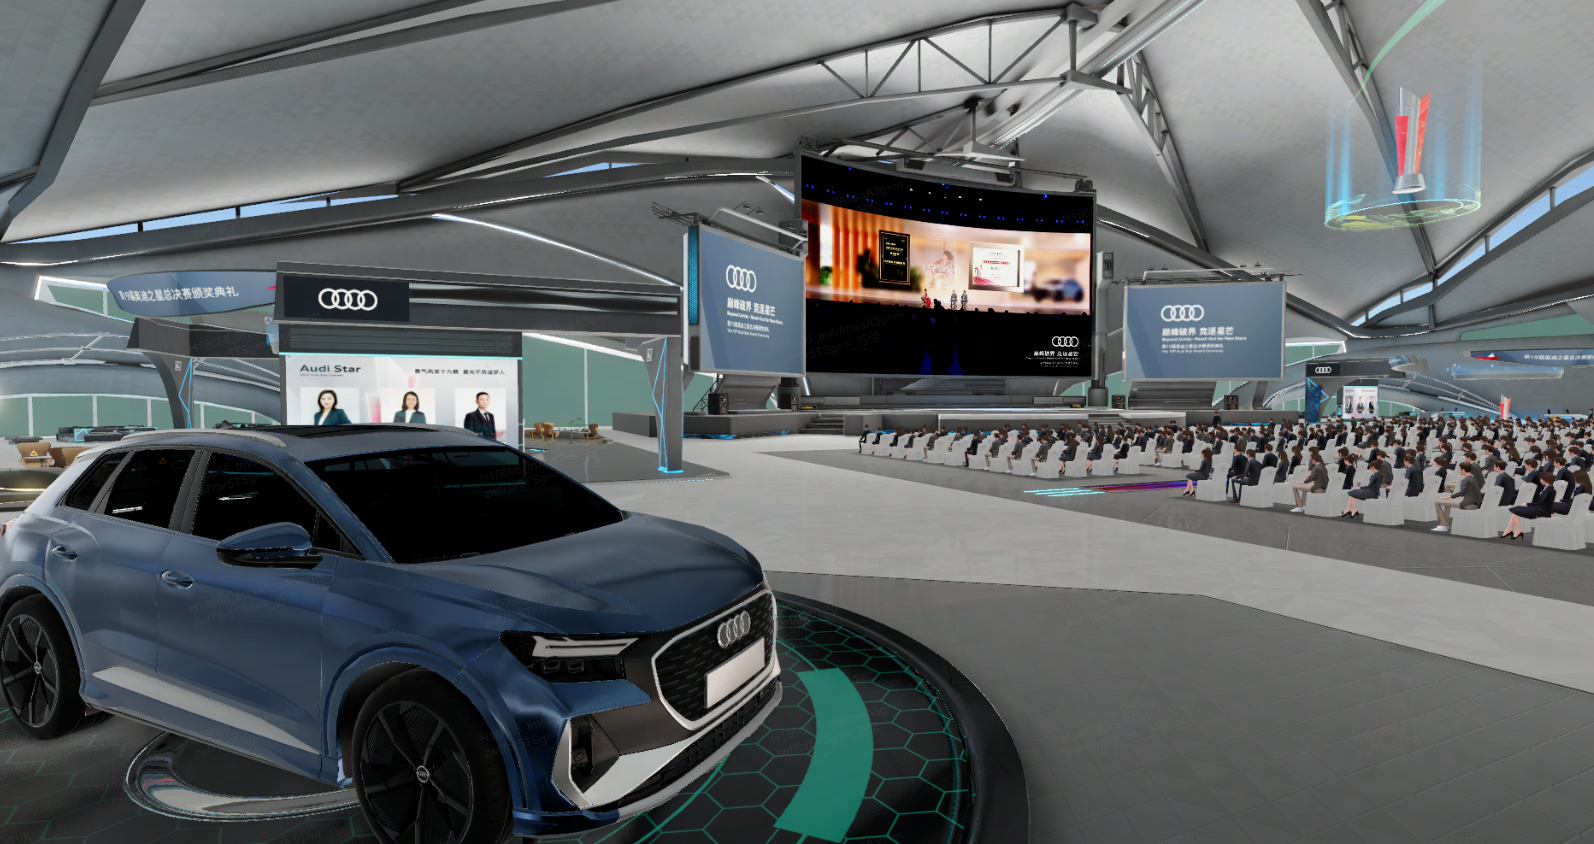 图片展示了一个现代展厅内部，有一辆蓝色奥迪汽车，背景是大屏幕和坐满人的听众席。